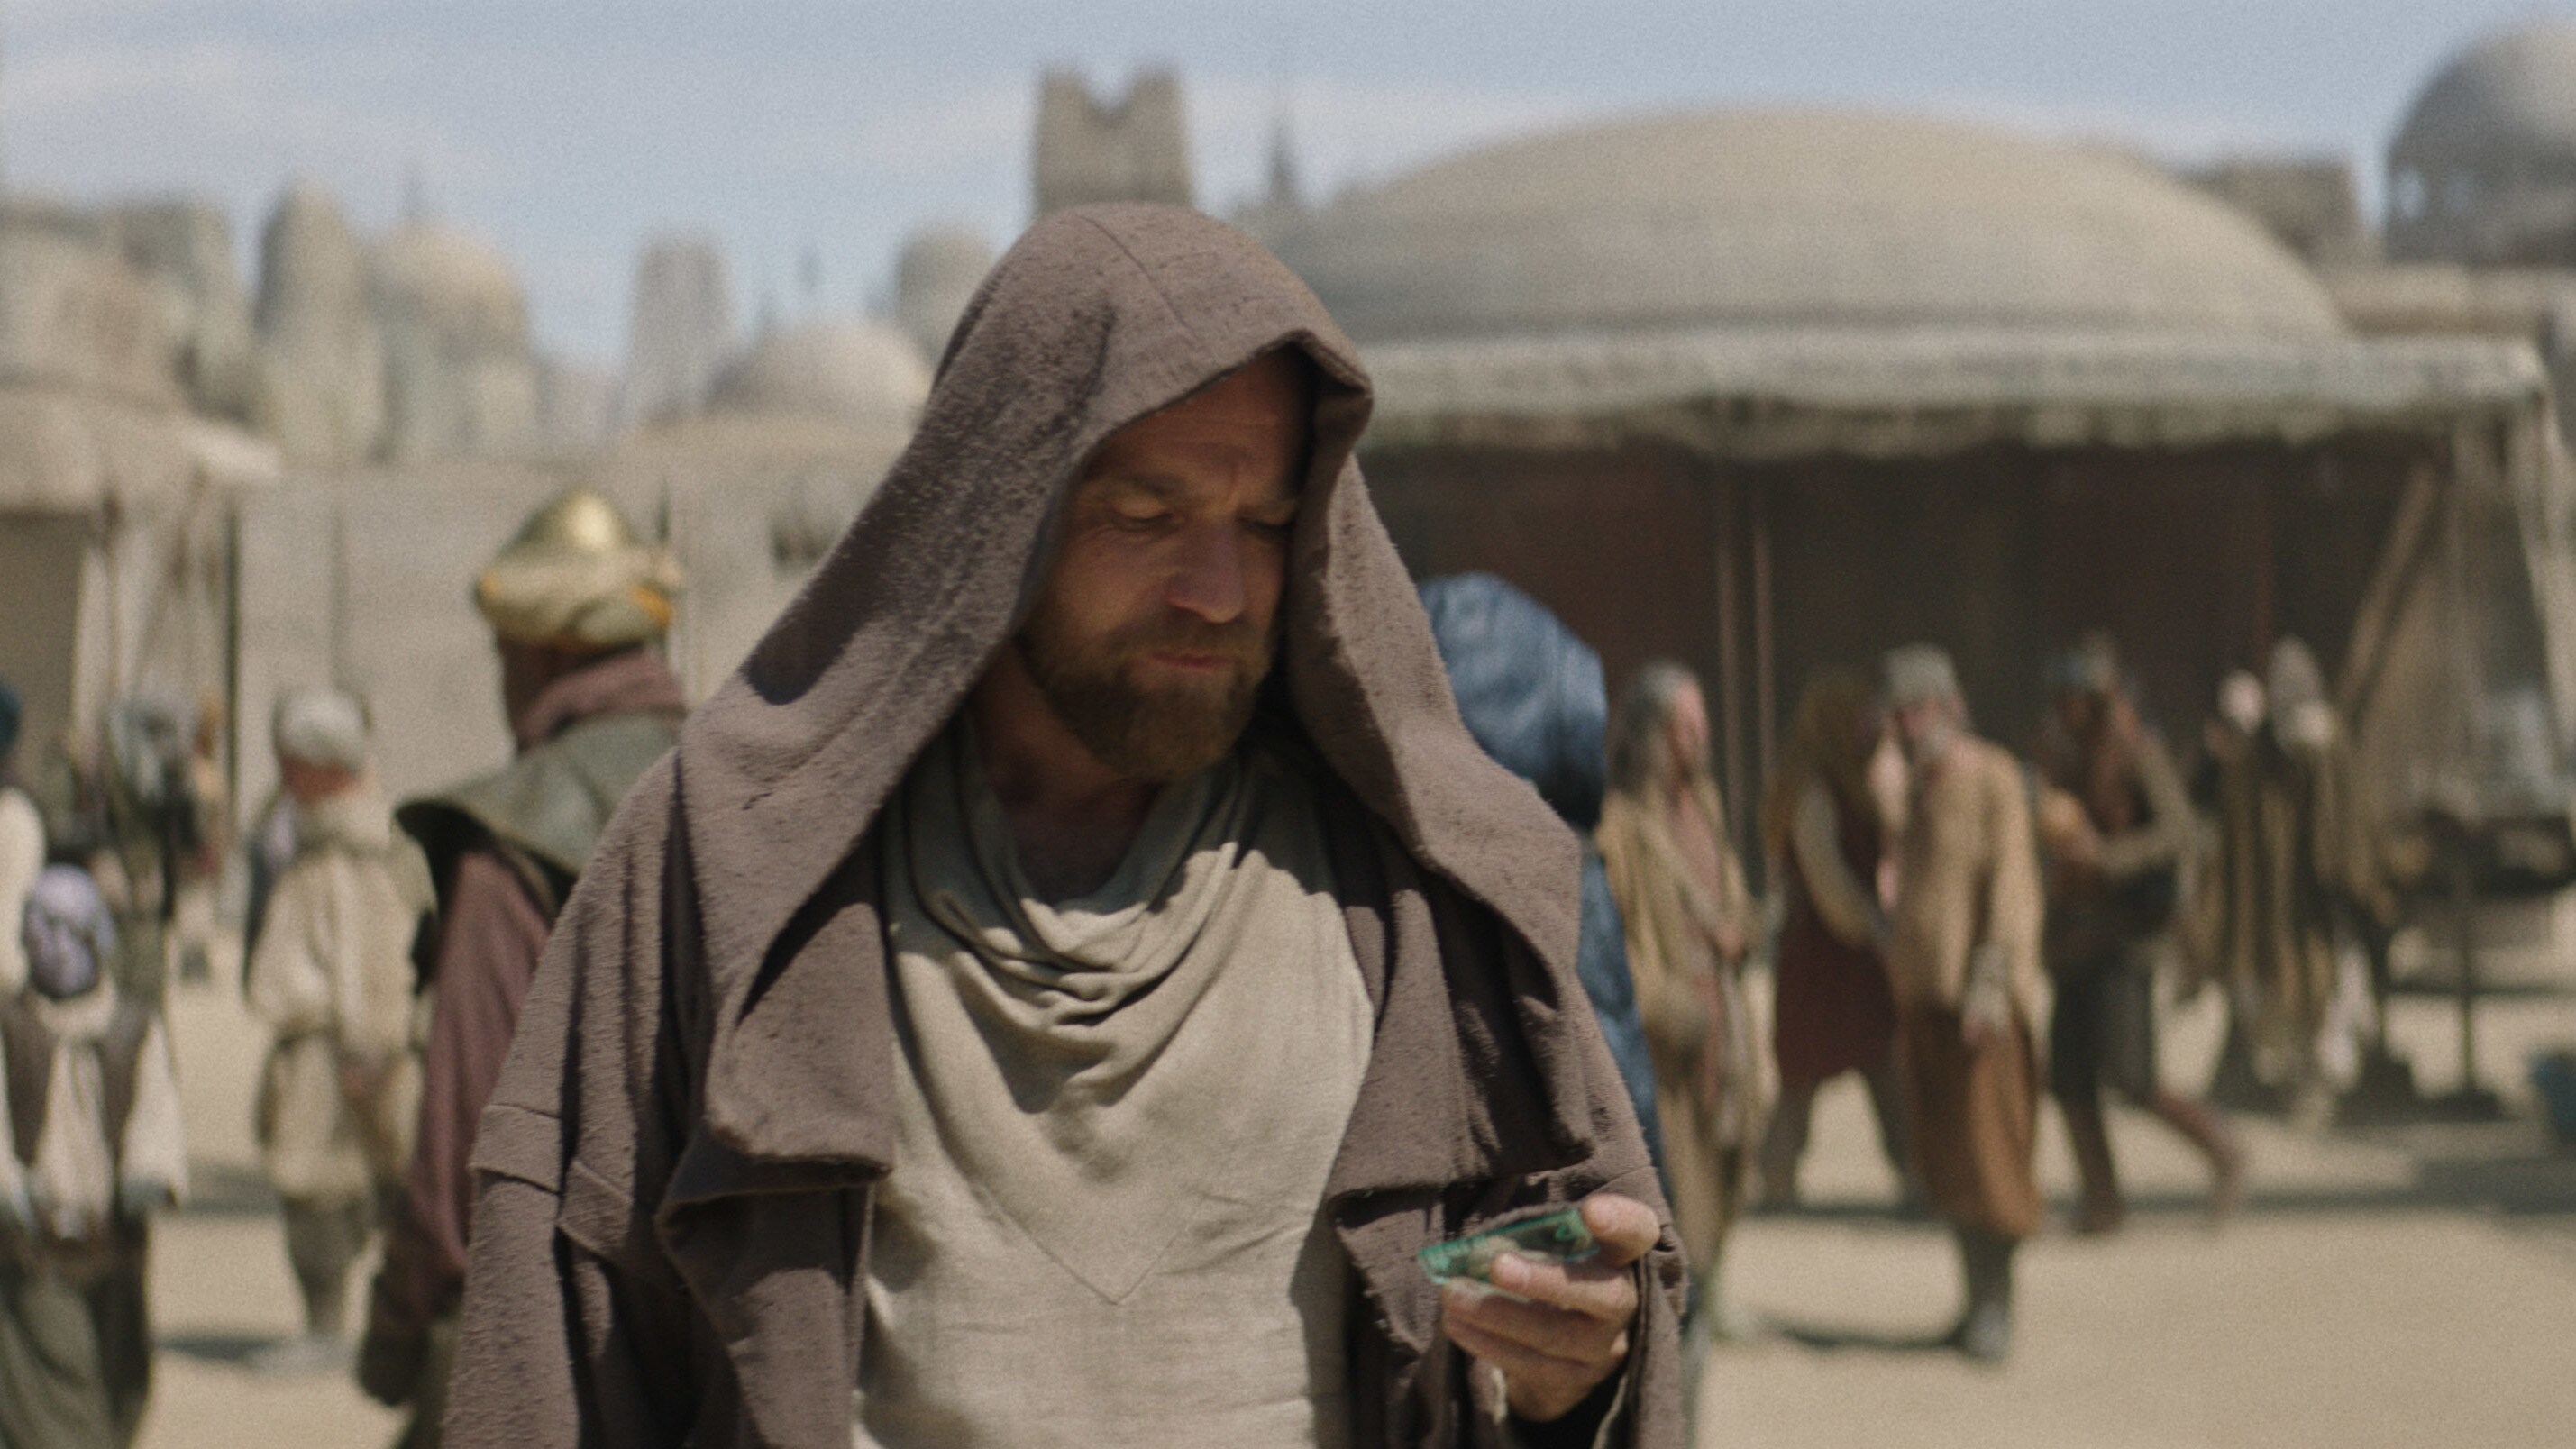 Obi-Wan Kenobi (Ewan McGregor) in Lucasfilm's OBI-WAN KENOBI, exclusively on Disney+. © 2022 Lucasfilm Ltd. & ™. All Rights Reserved.